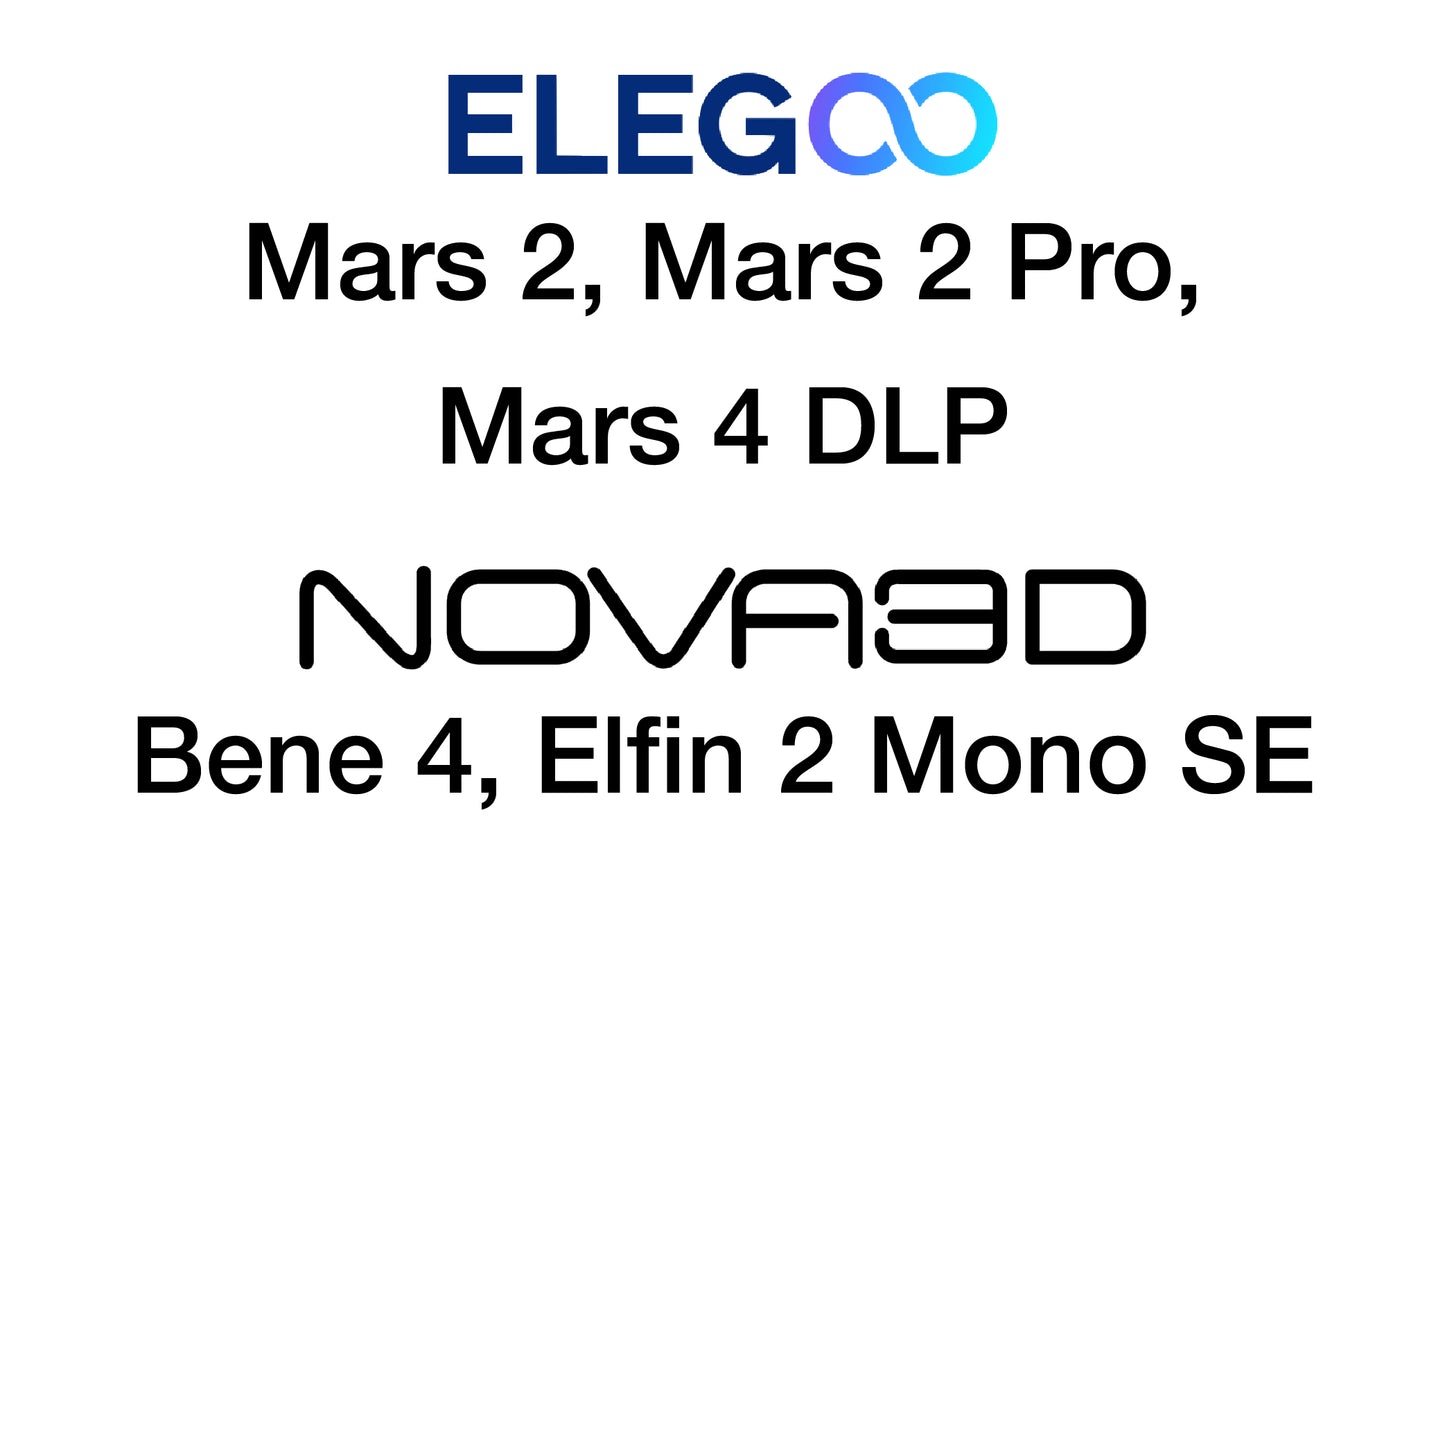 Kit - Elegoo Mars 2 and Elegoo Mars 4 DLP - 140 x 84